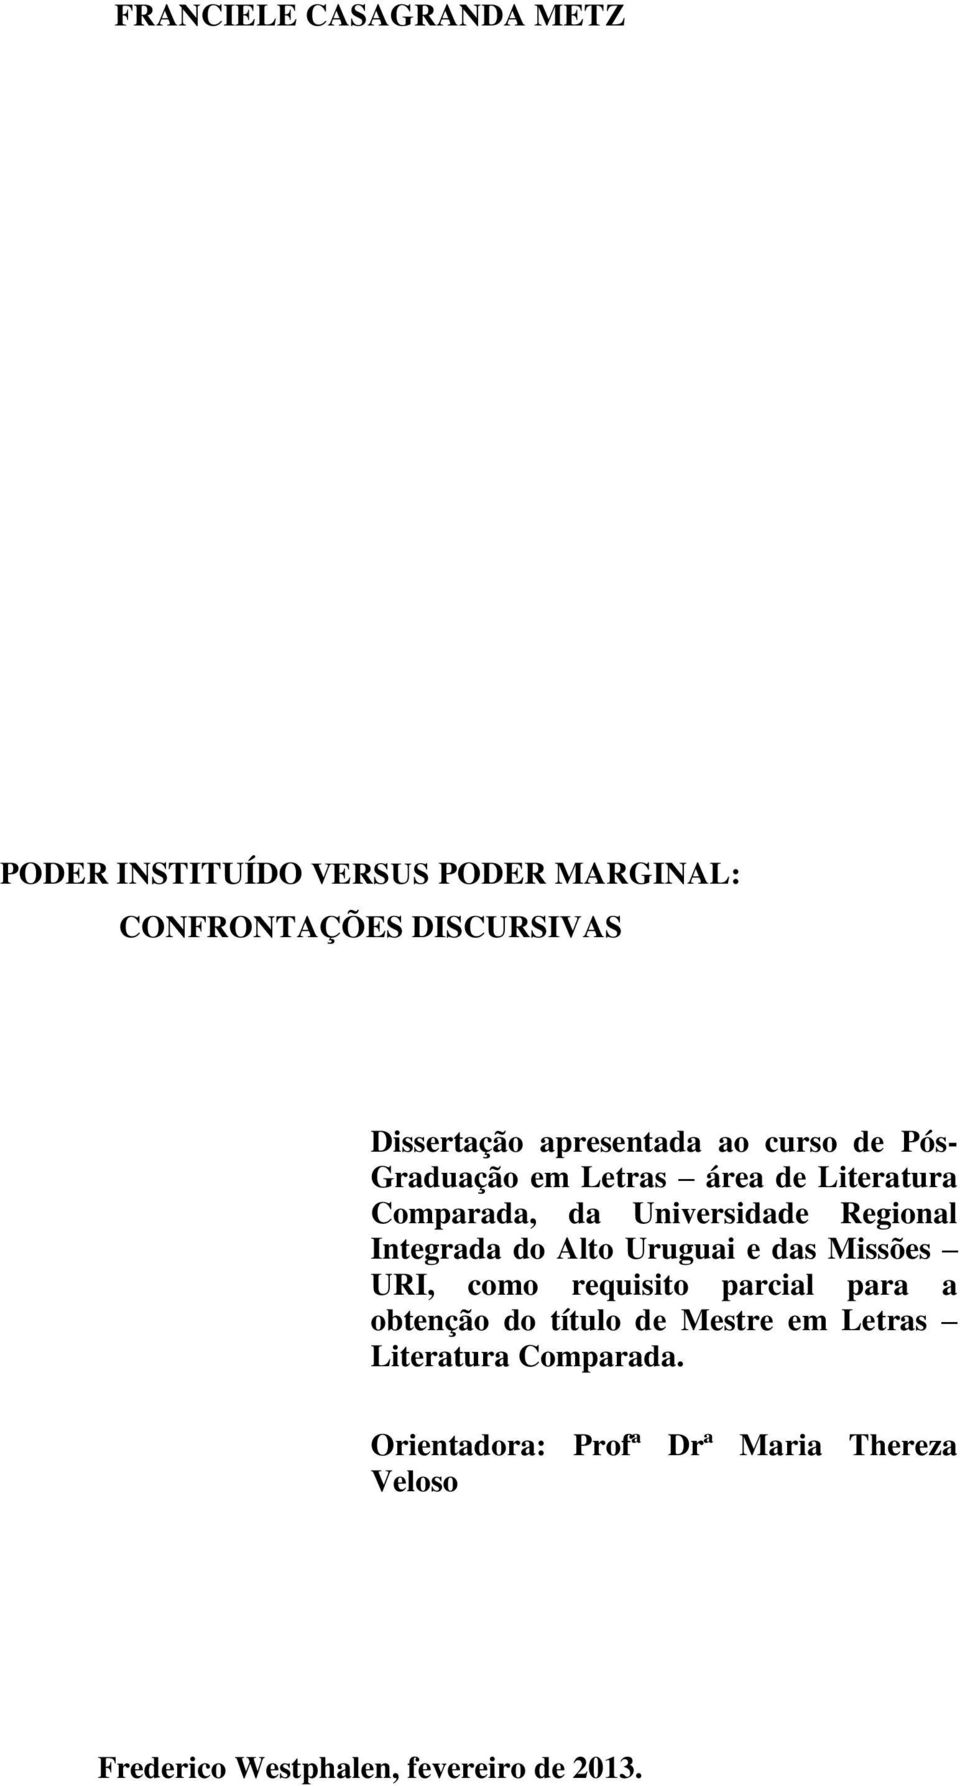 Integrada do Alto Uruguai e das Missões URI, como requisito parcial para a obtenção do título de Mestre em